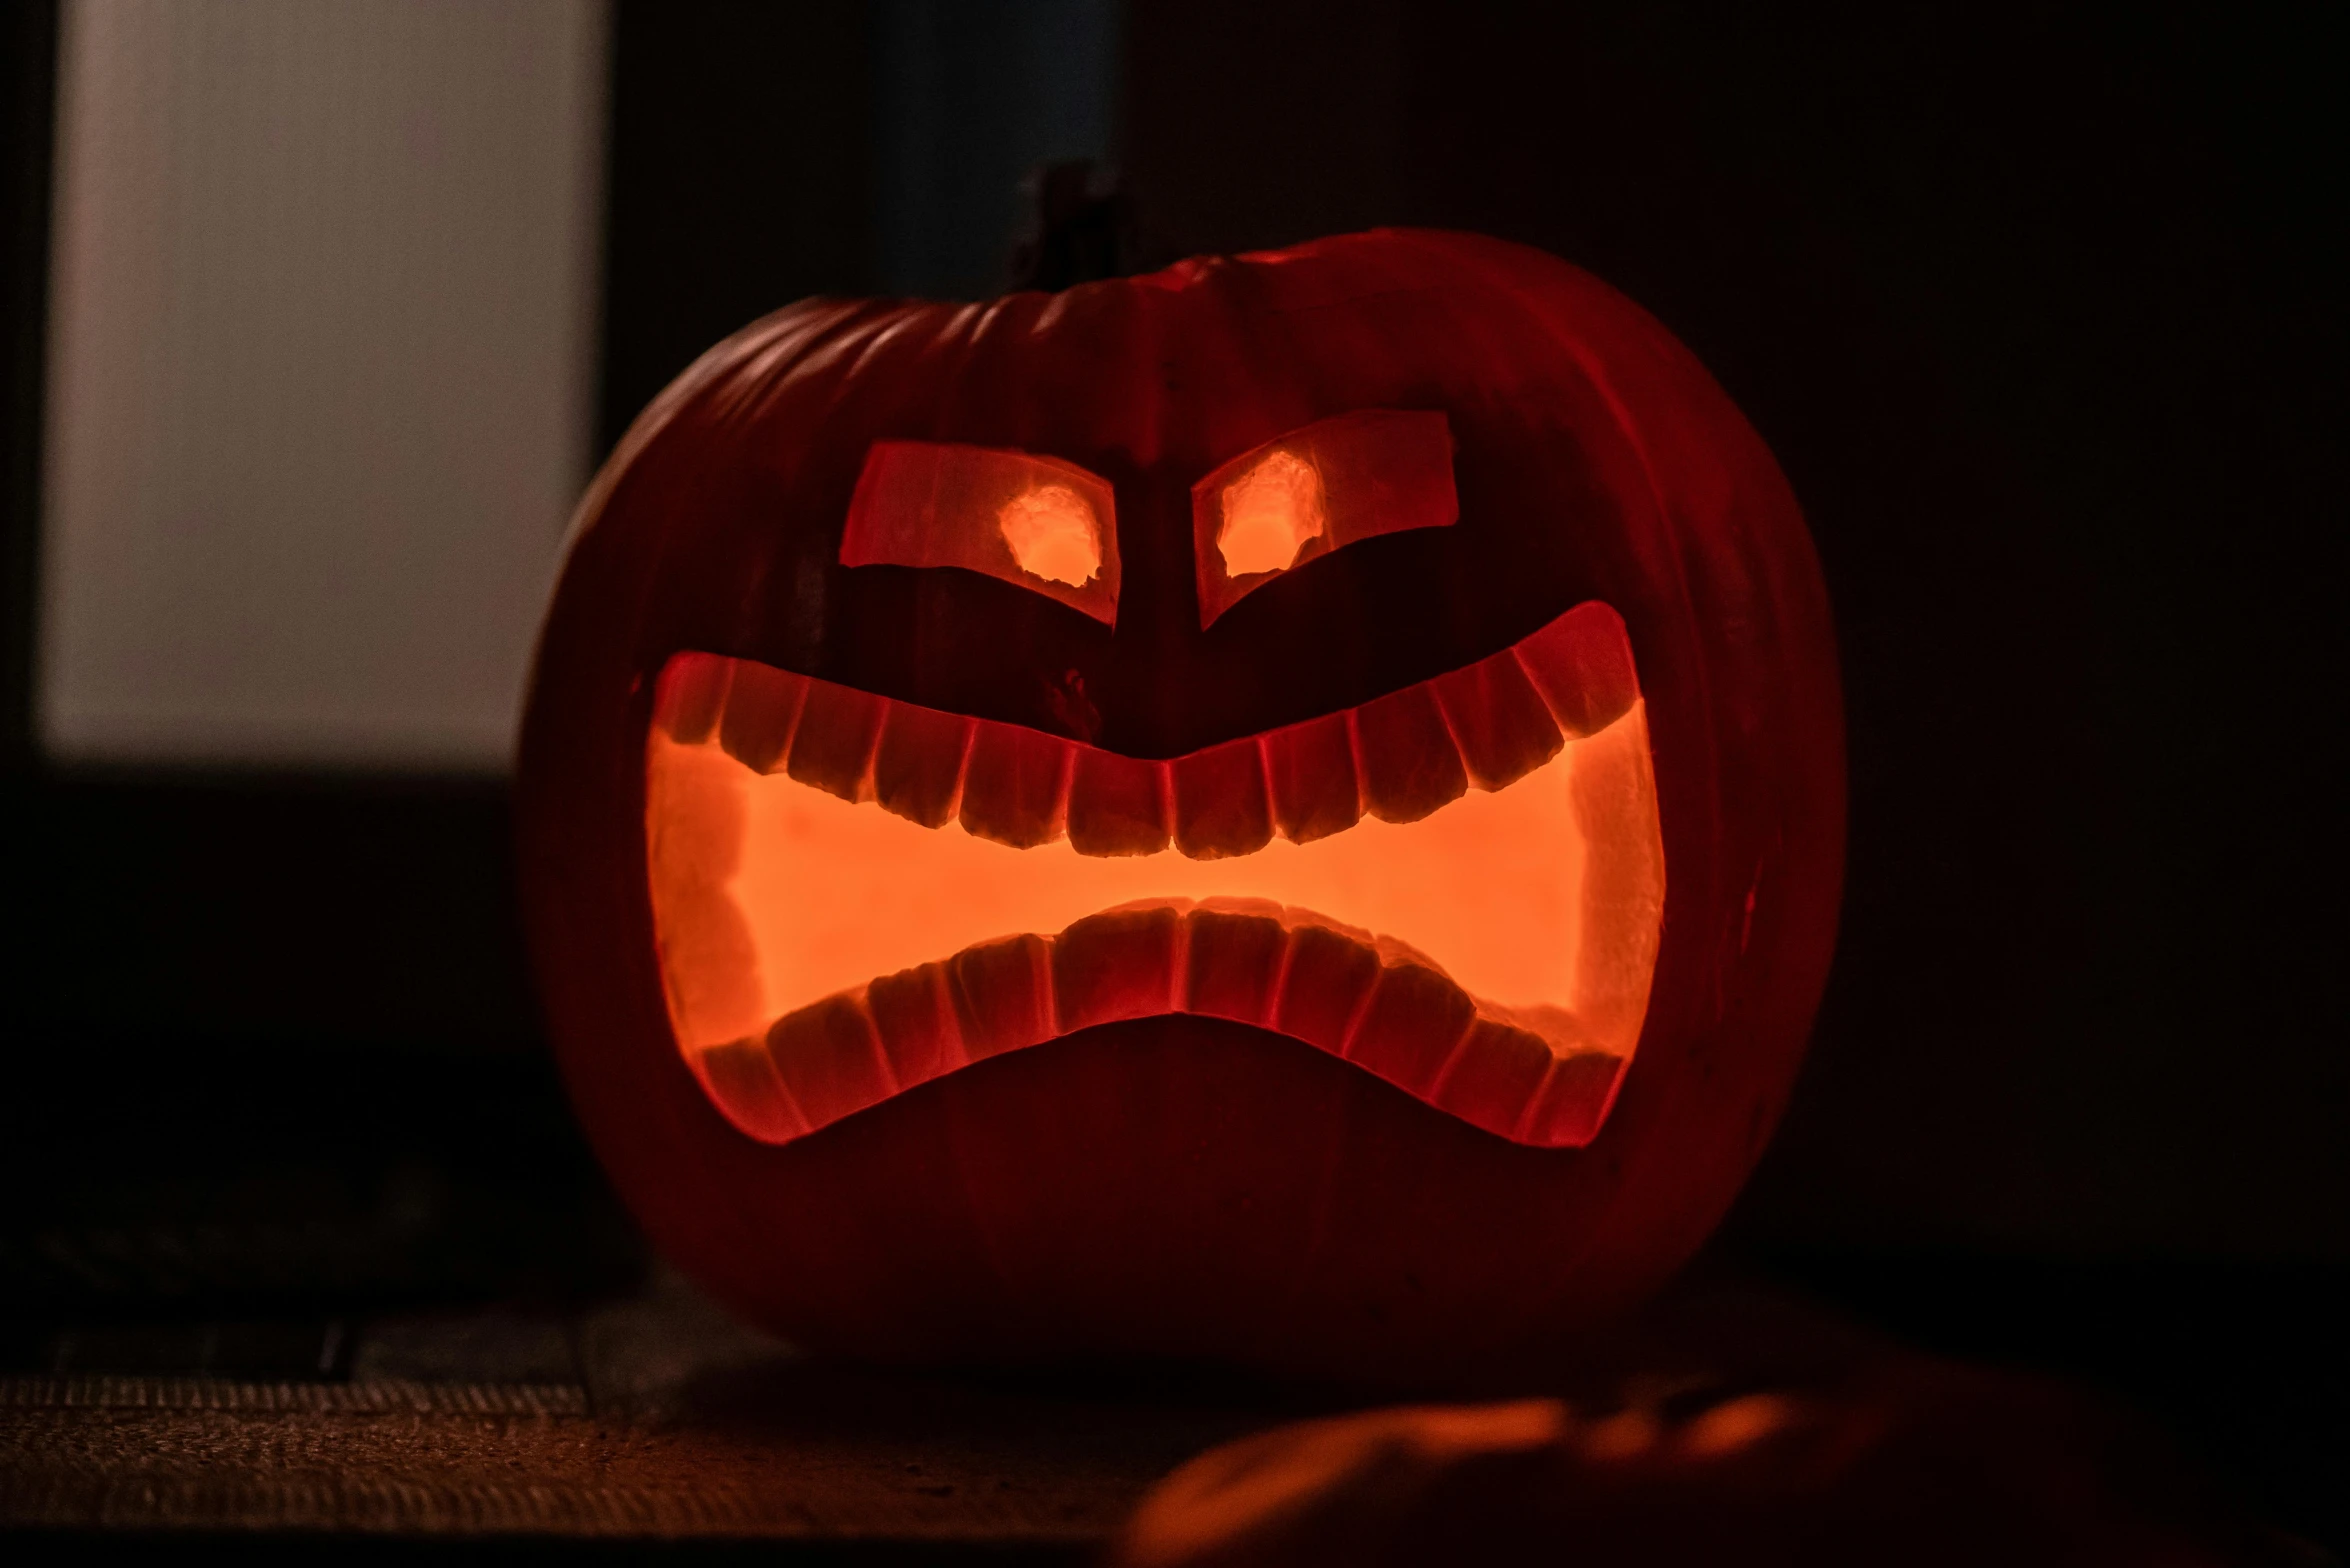 a jack o lantern carved to look like an angry pumpkin